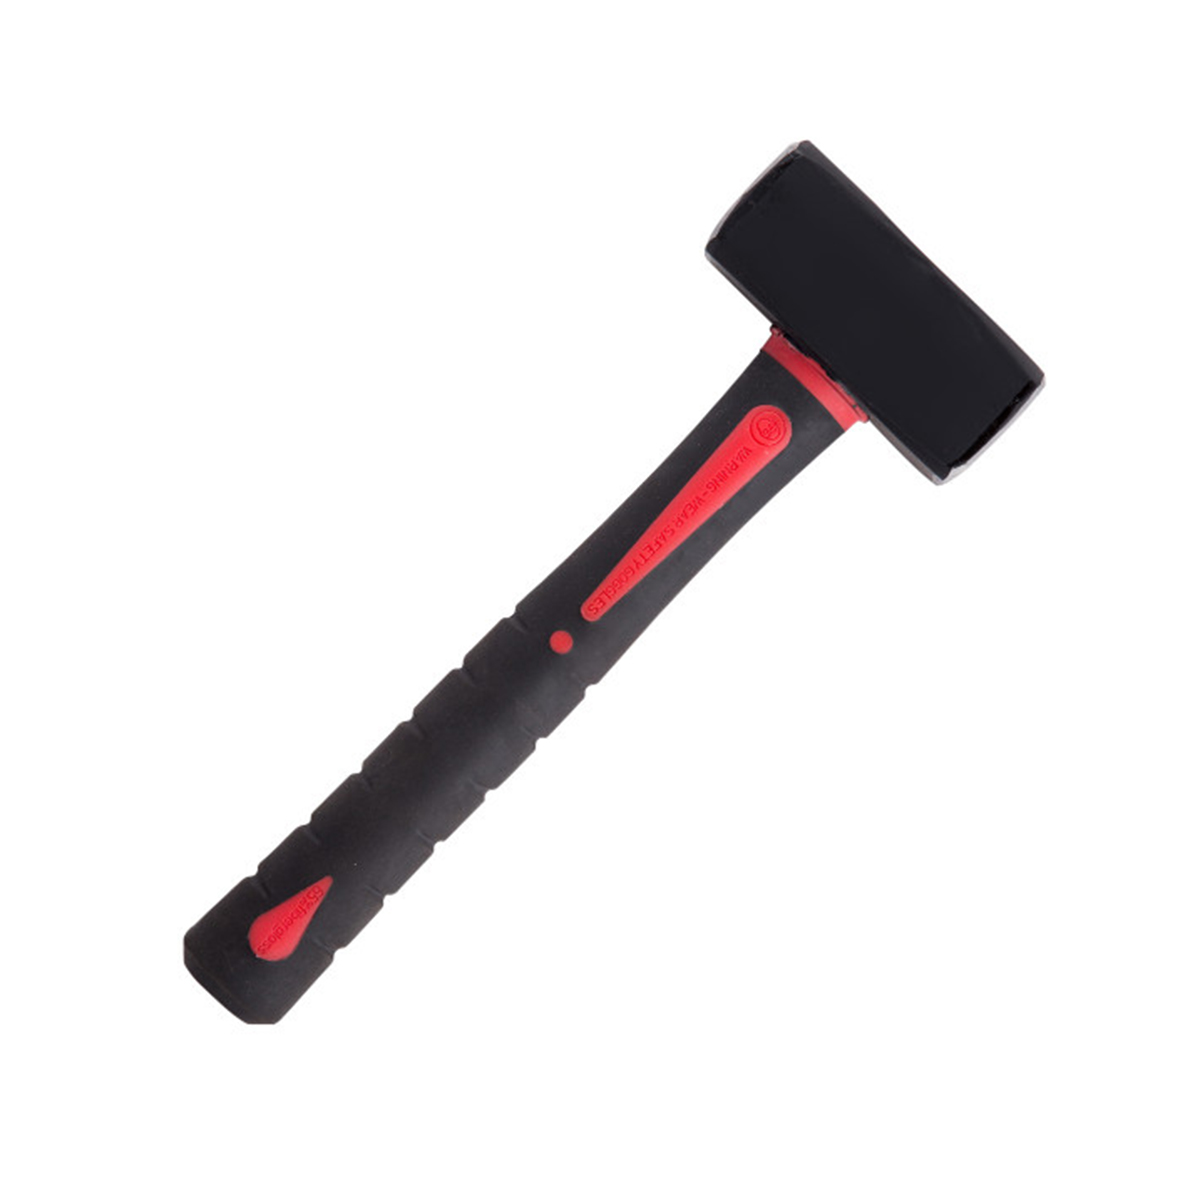 Кувалда Beorol, фиберглассовая обрезиненная ручка, 1 кг кувалда с удлинённой рукояткой сибин 20133 8 8 кг